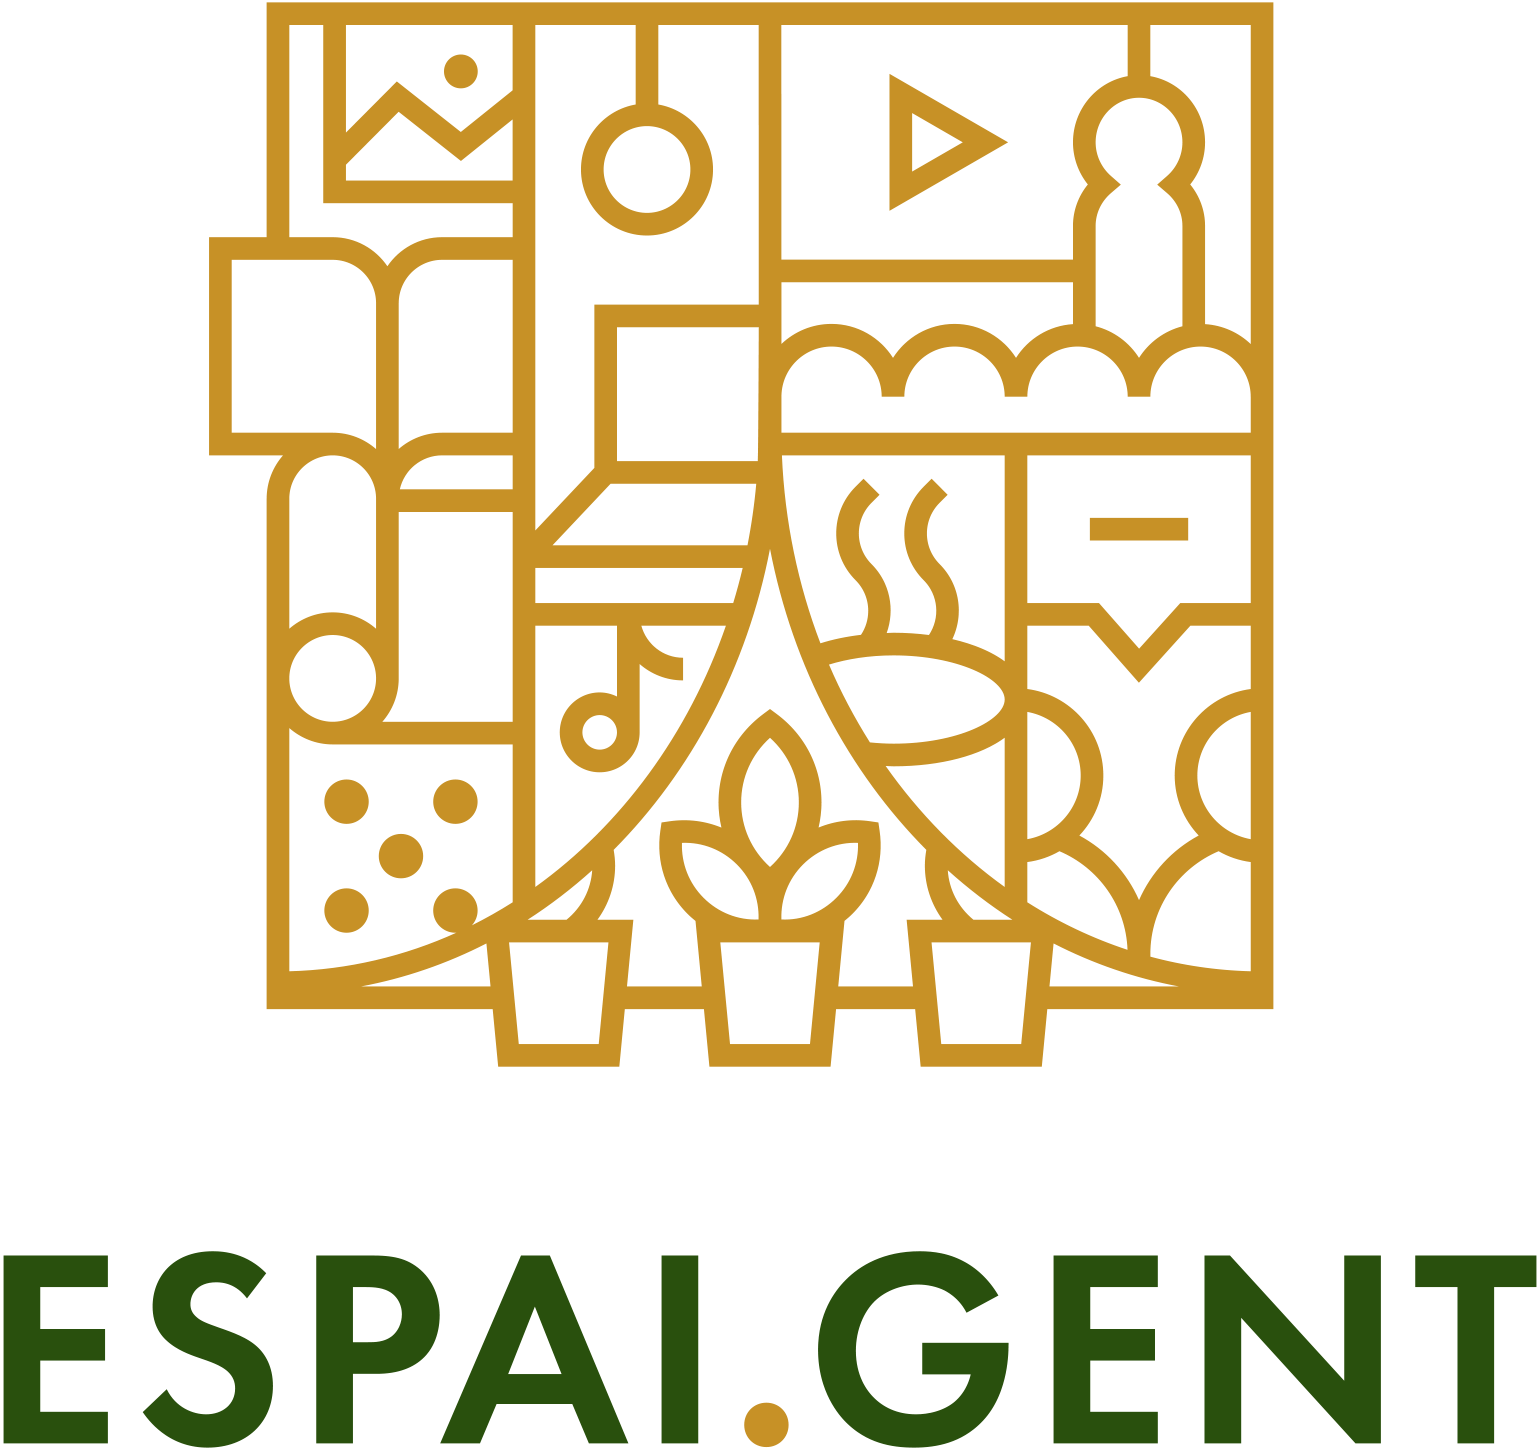 ESPAI.GENT Logo